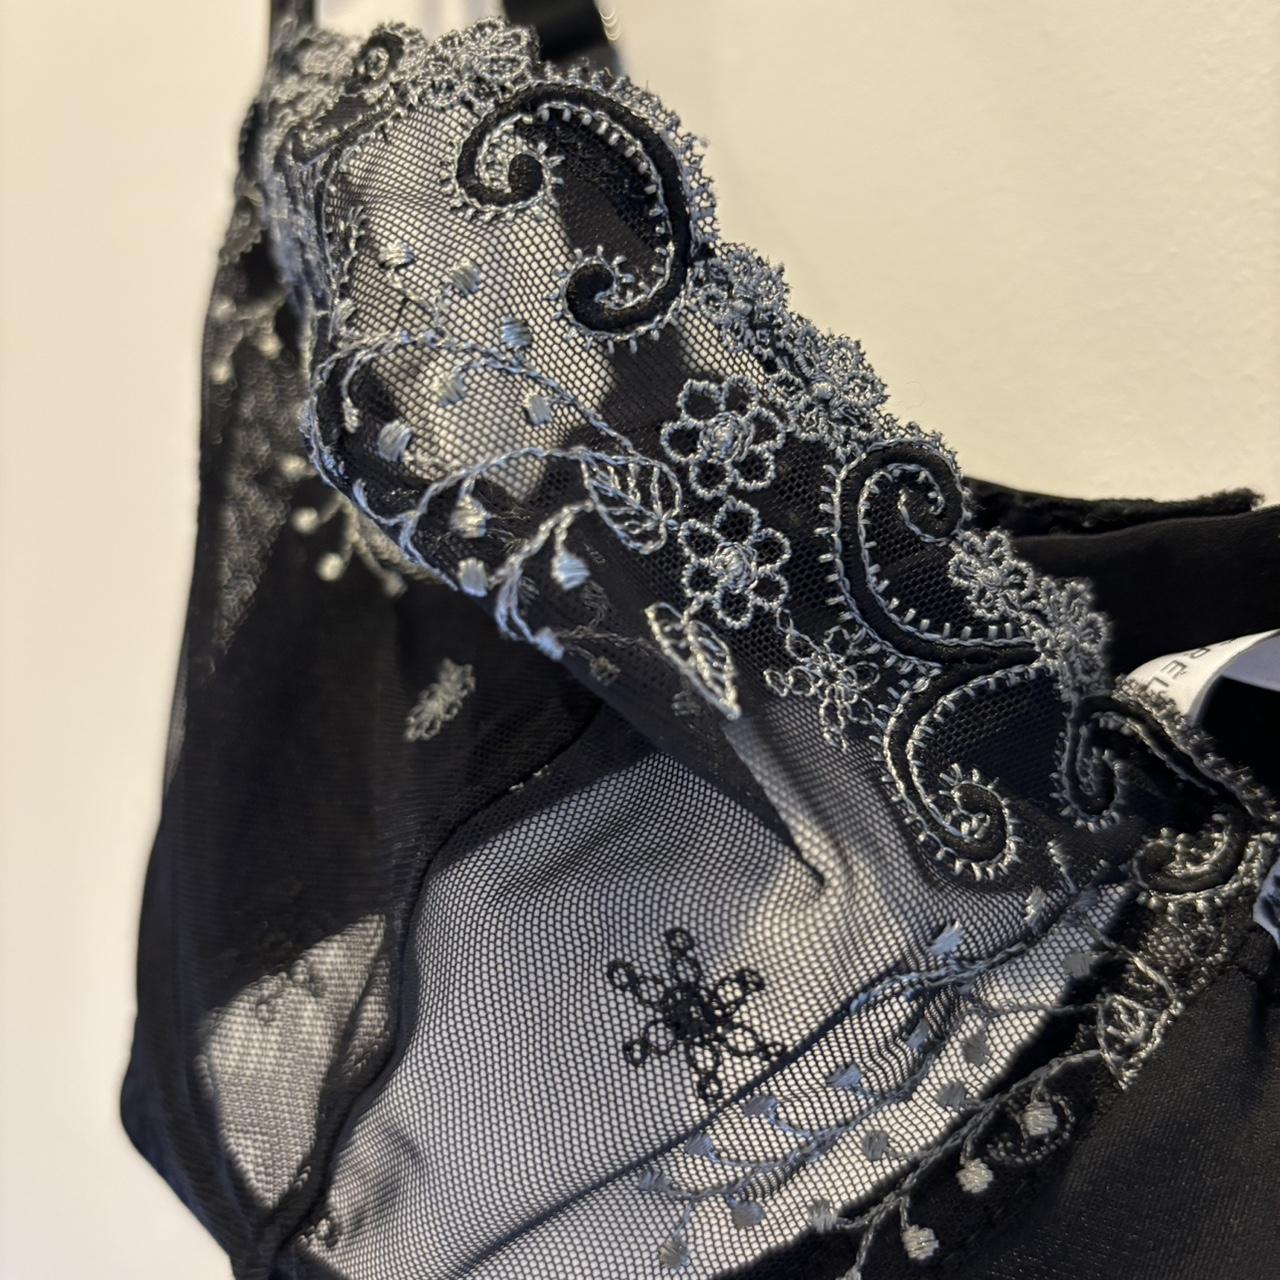 Designer Simone Perele nude lace bra! Super cute and - Depop